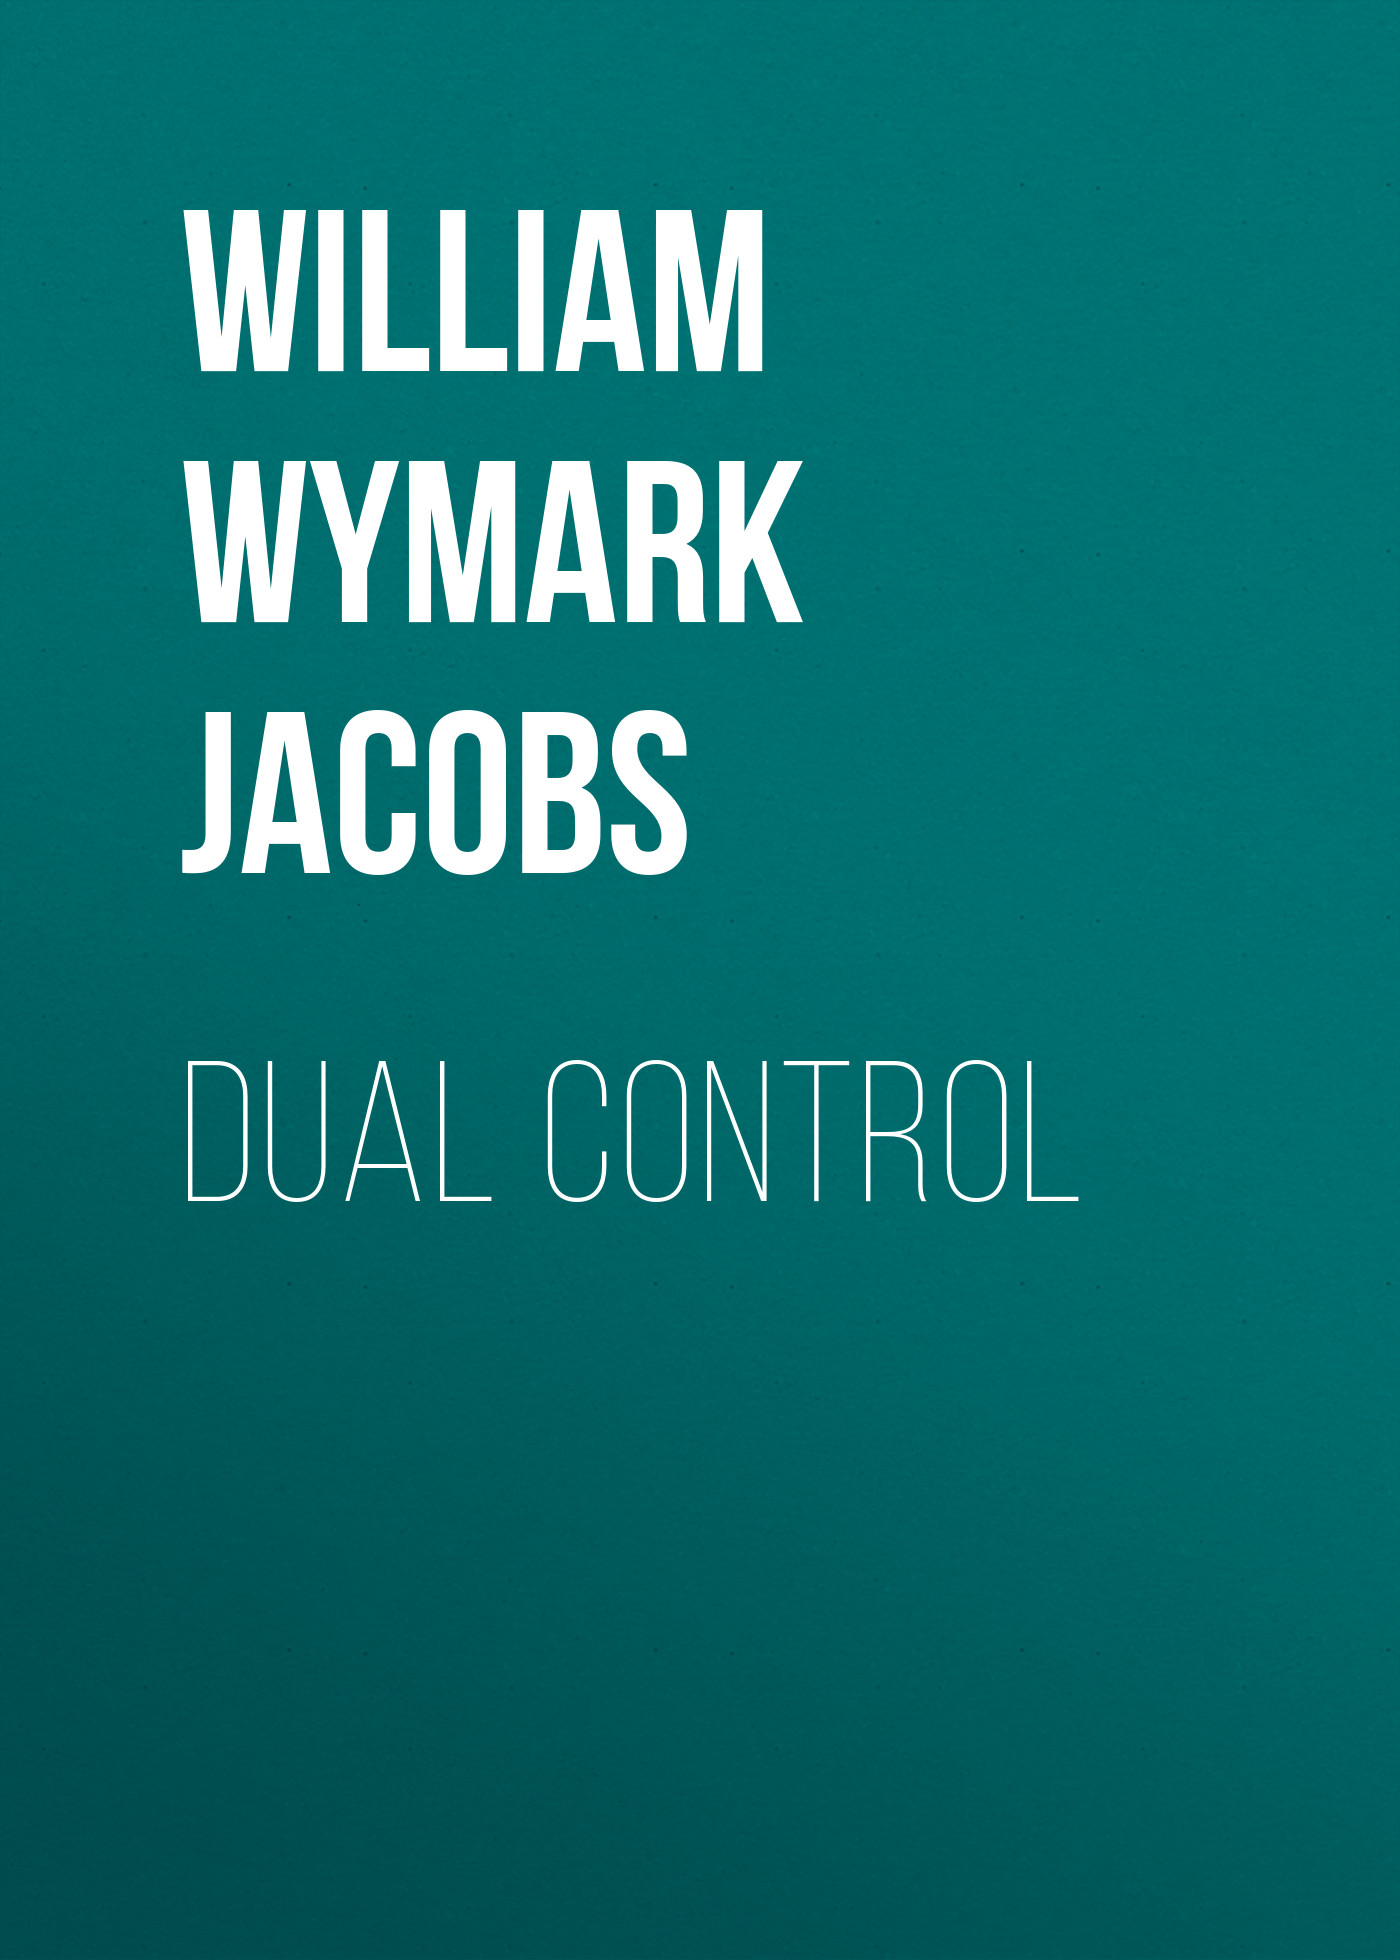 Книга Dual Control из серии , созданная William Wymark Jacobs, может относится к жанру Зарубежная классика, Зарубежная старинная литература. Стоимость электронной книги Dual Control с идентификатором 34842526 составляет 0 руб.